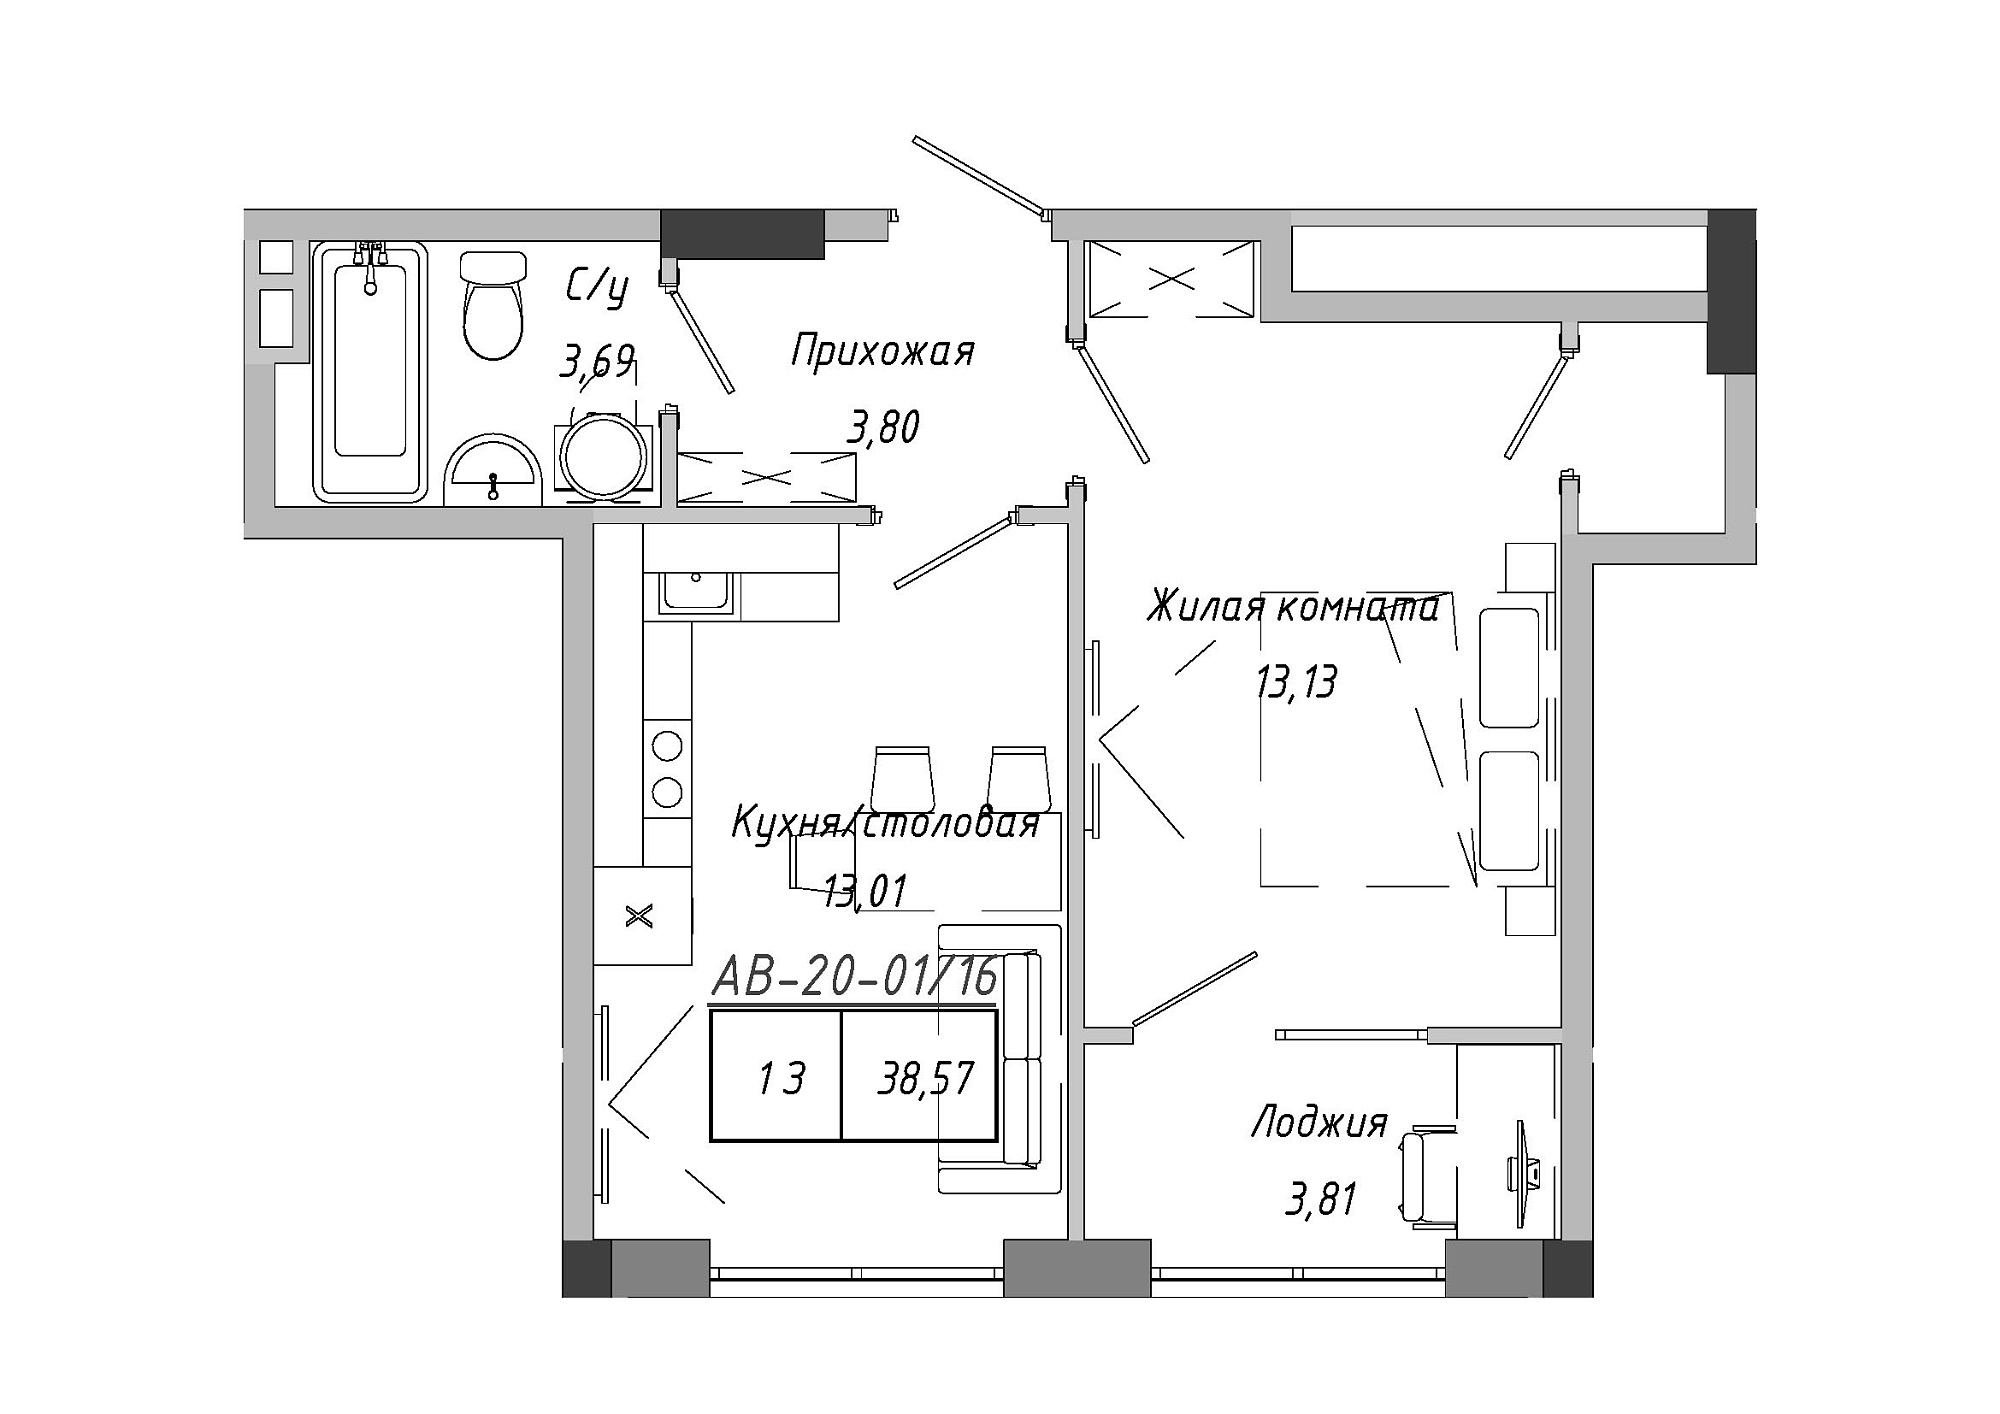 Планування 1-к квартира площею 38.57м2, AB-20-01/00016.